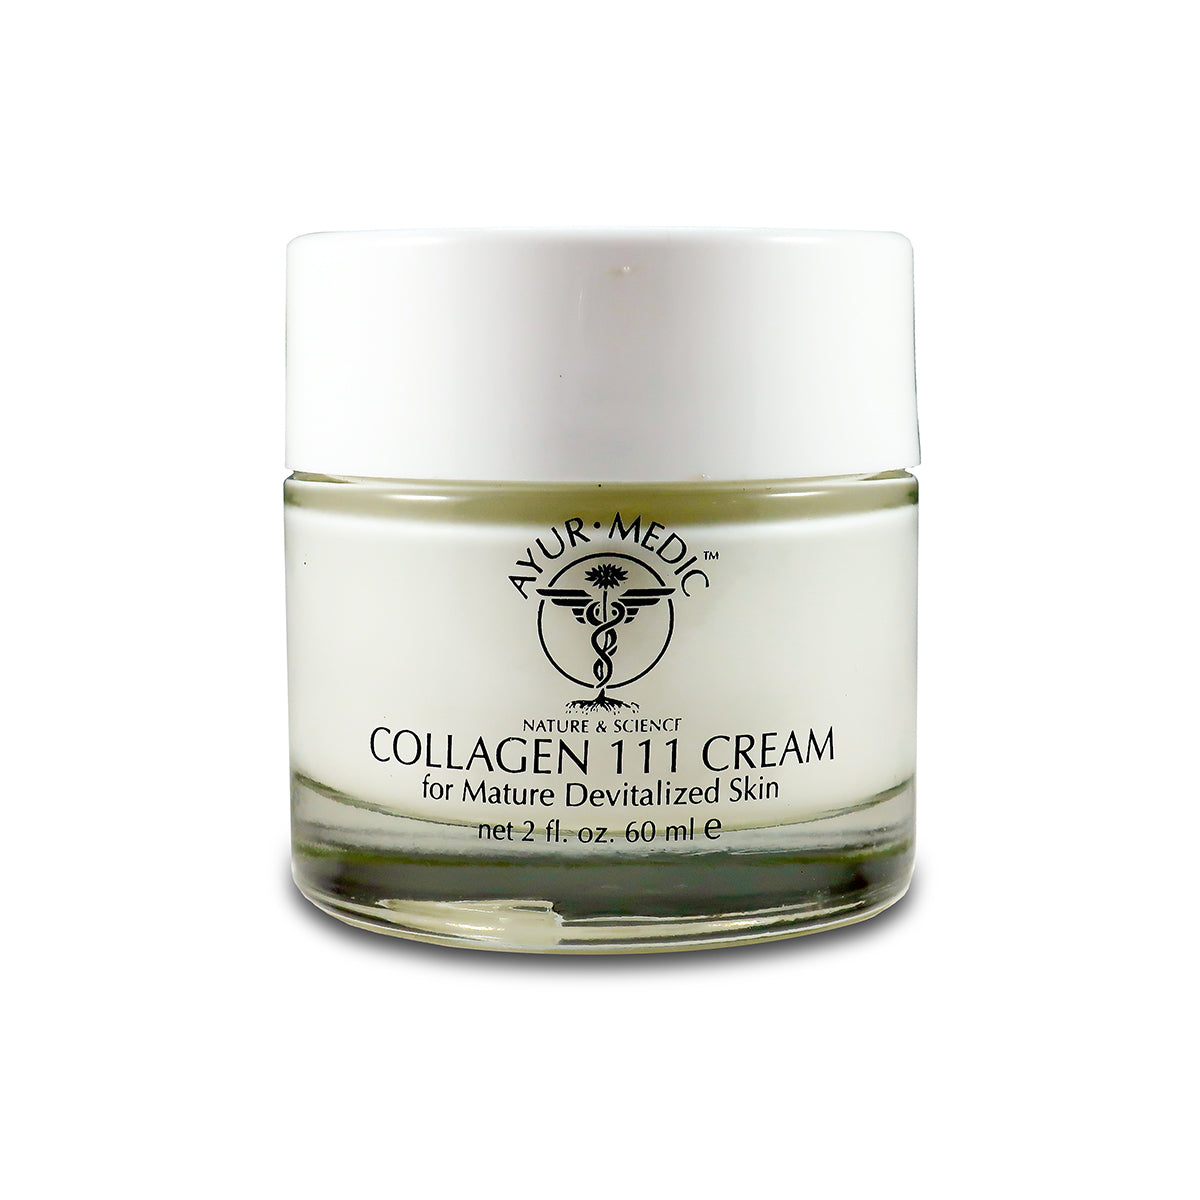 Collagen III Cream for Mature Devitalized Skin